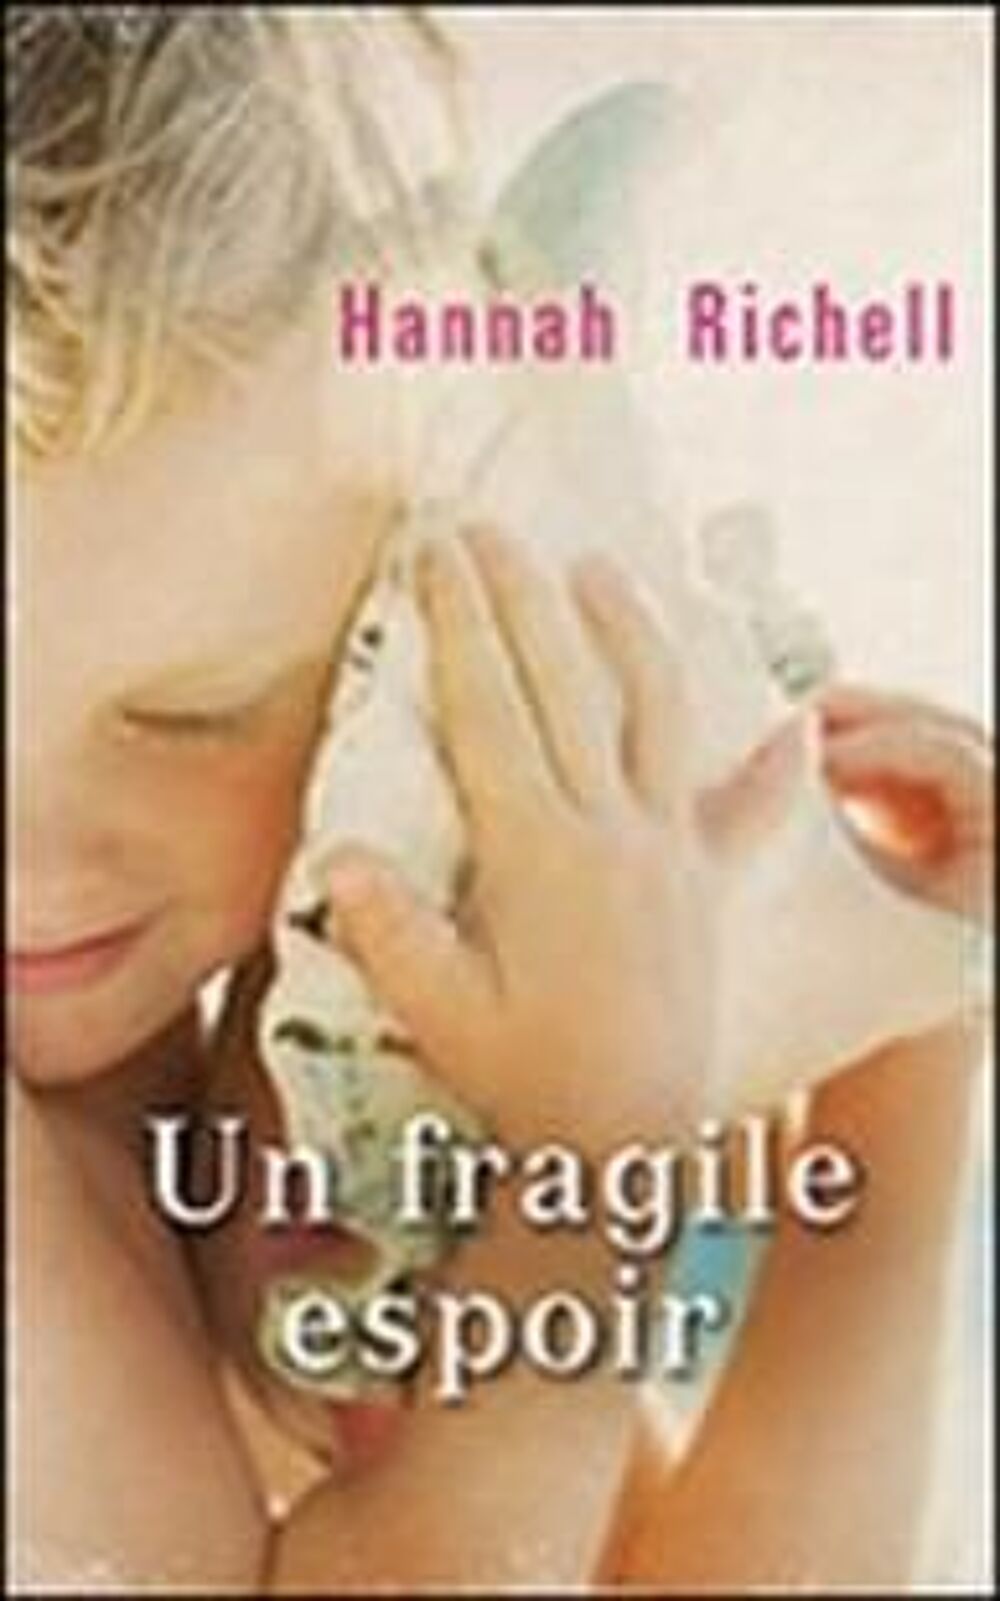 UN FRAGILE ESPOIR de HANNAH RICHELL France Loisirs Livres et BD